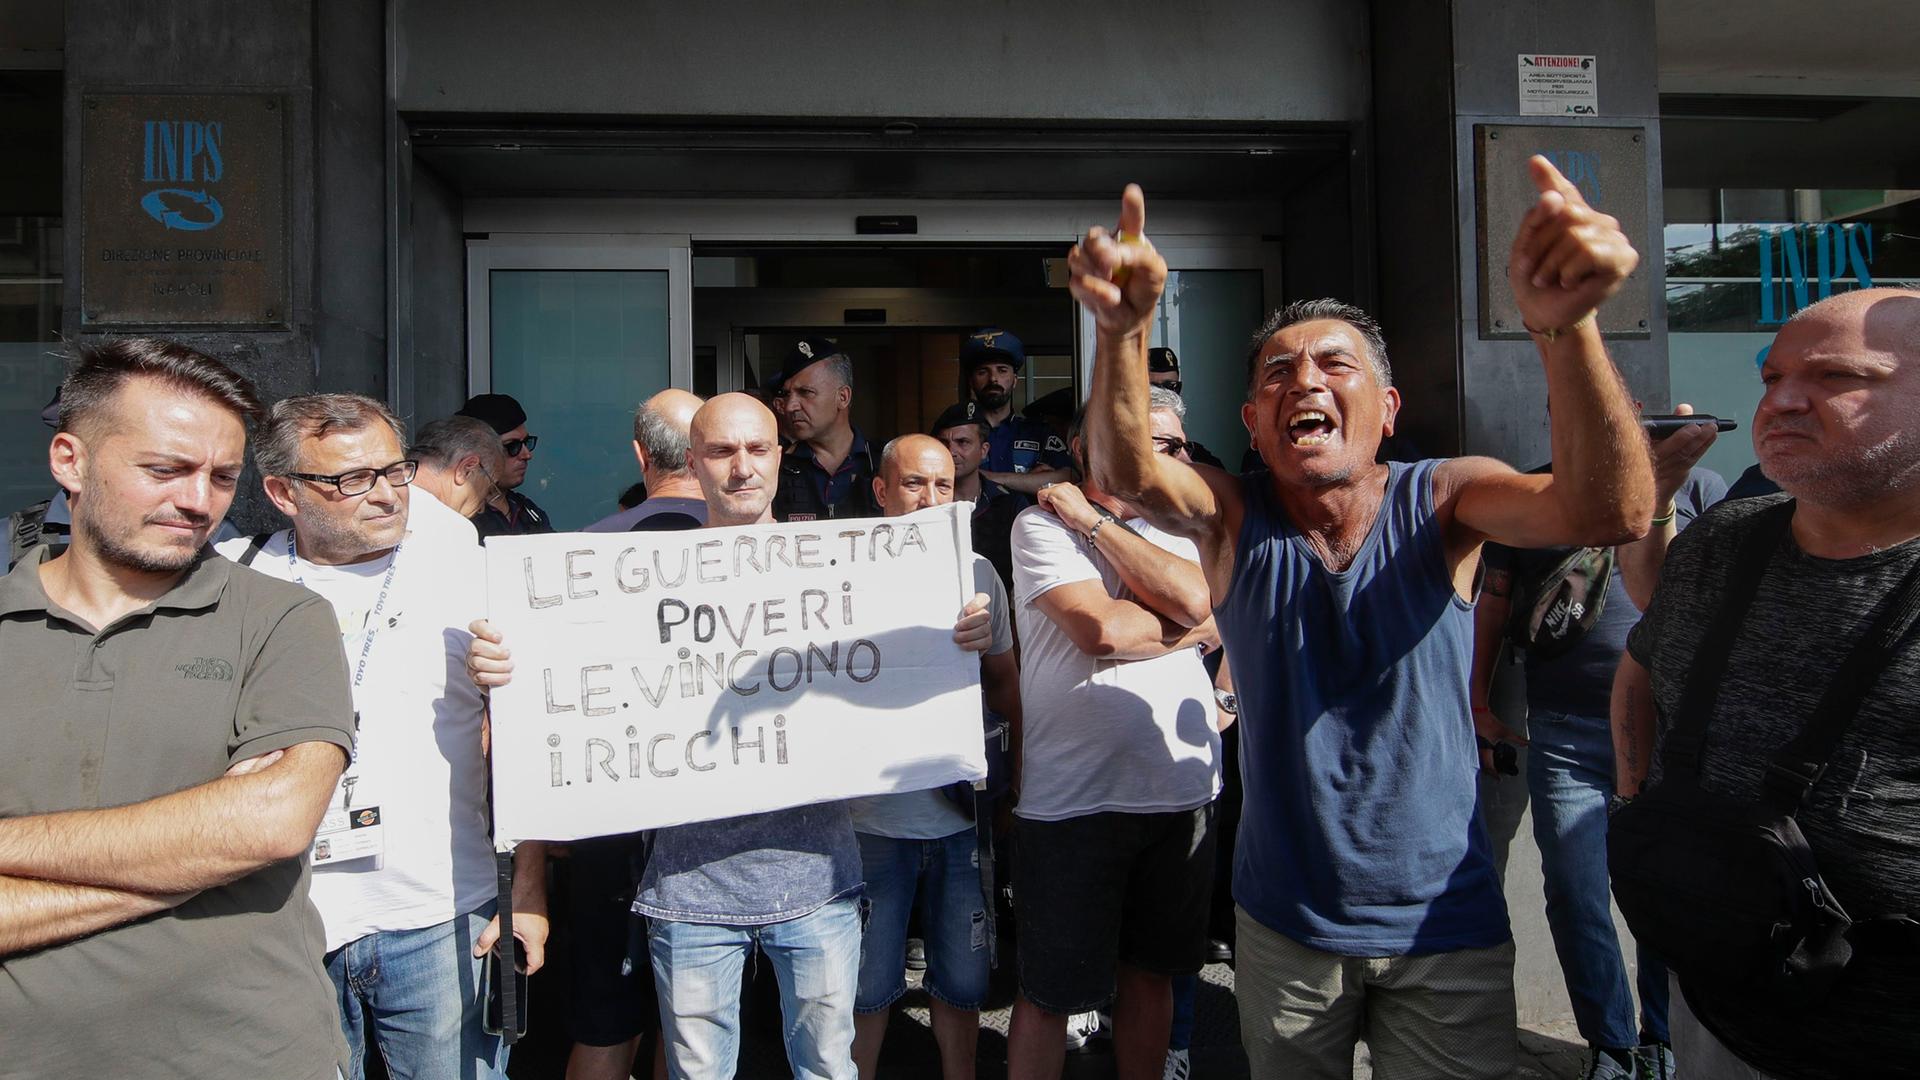 Italien, Neapel: Menschen protestieren mit einem Banner gegen die Streichung der Sozialhilfen.